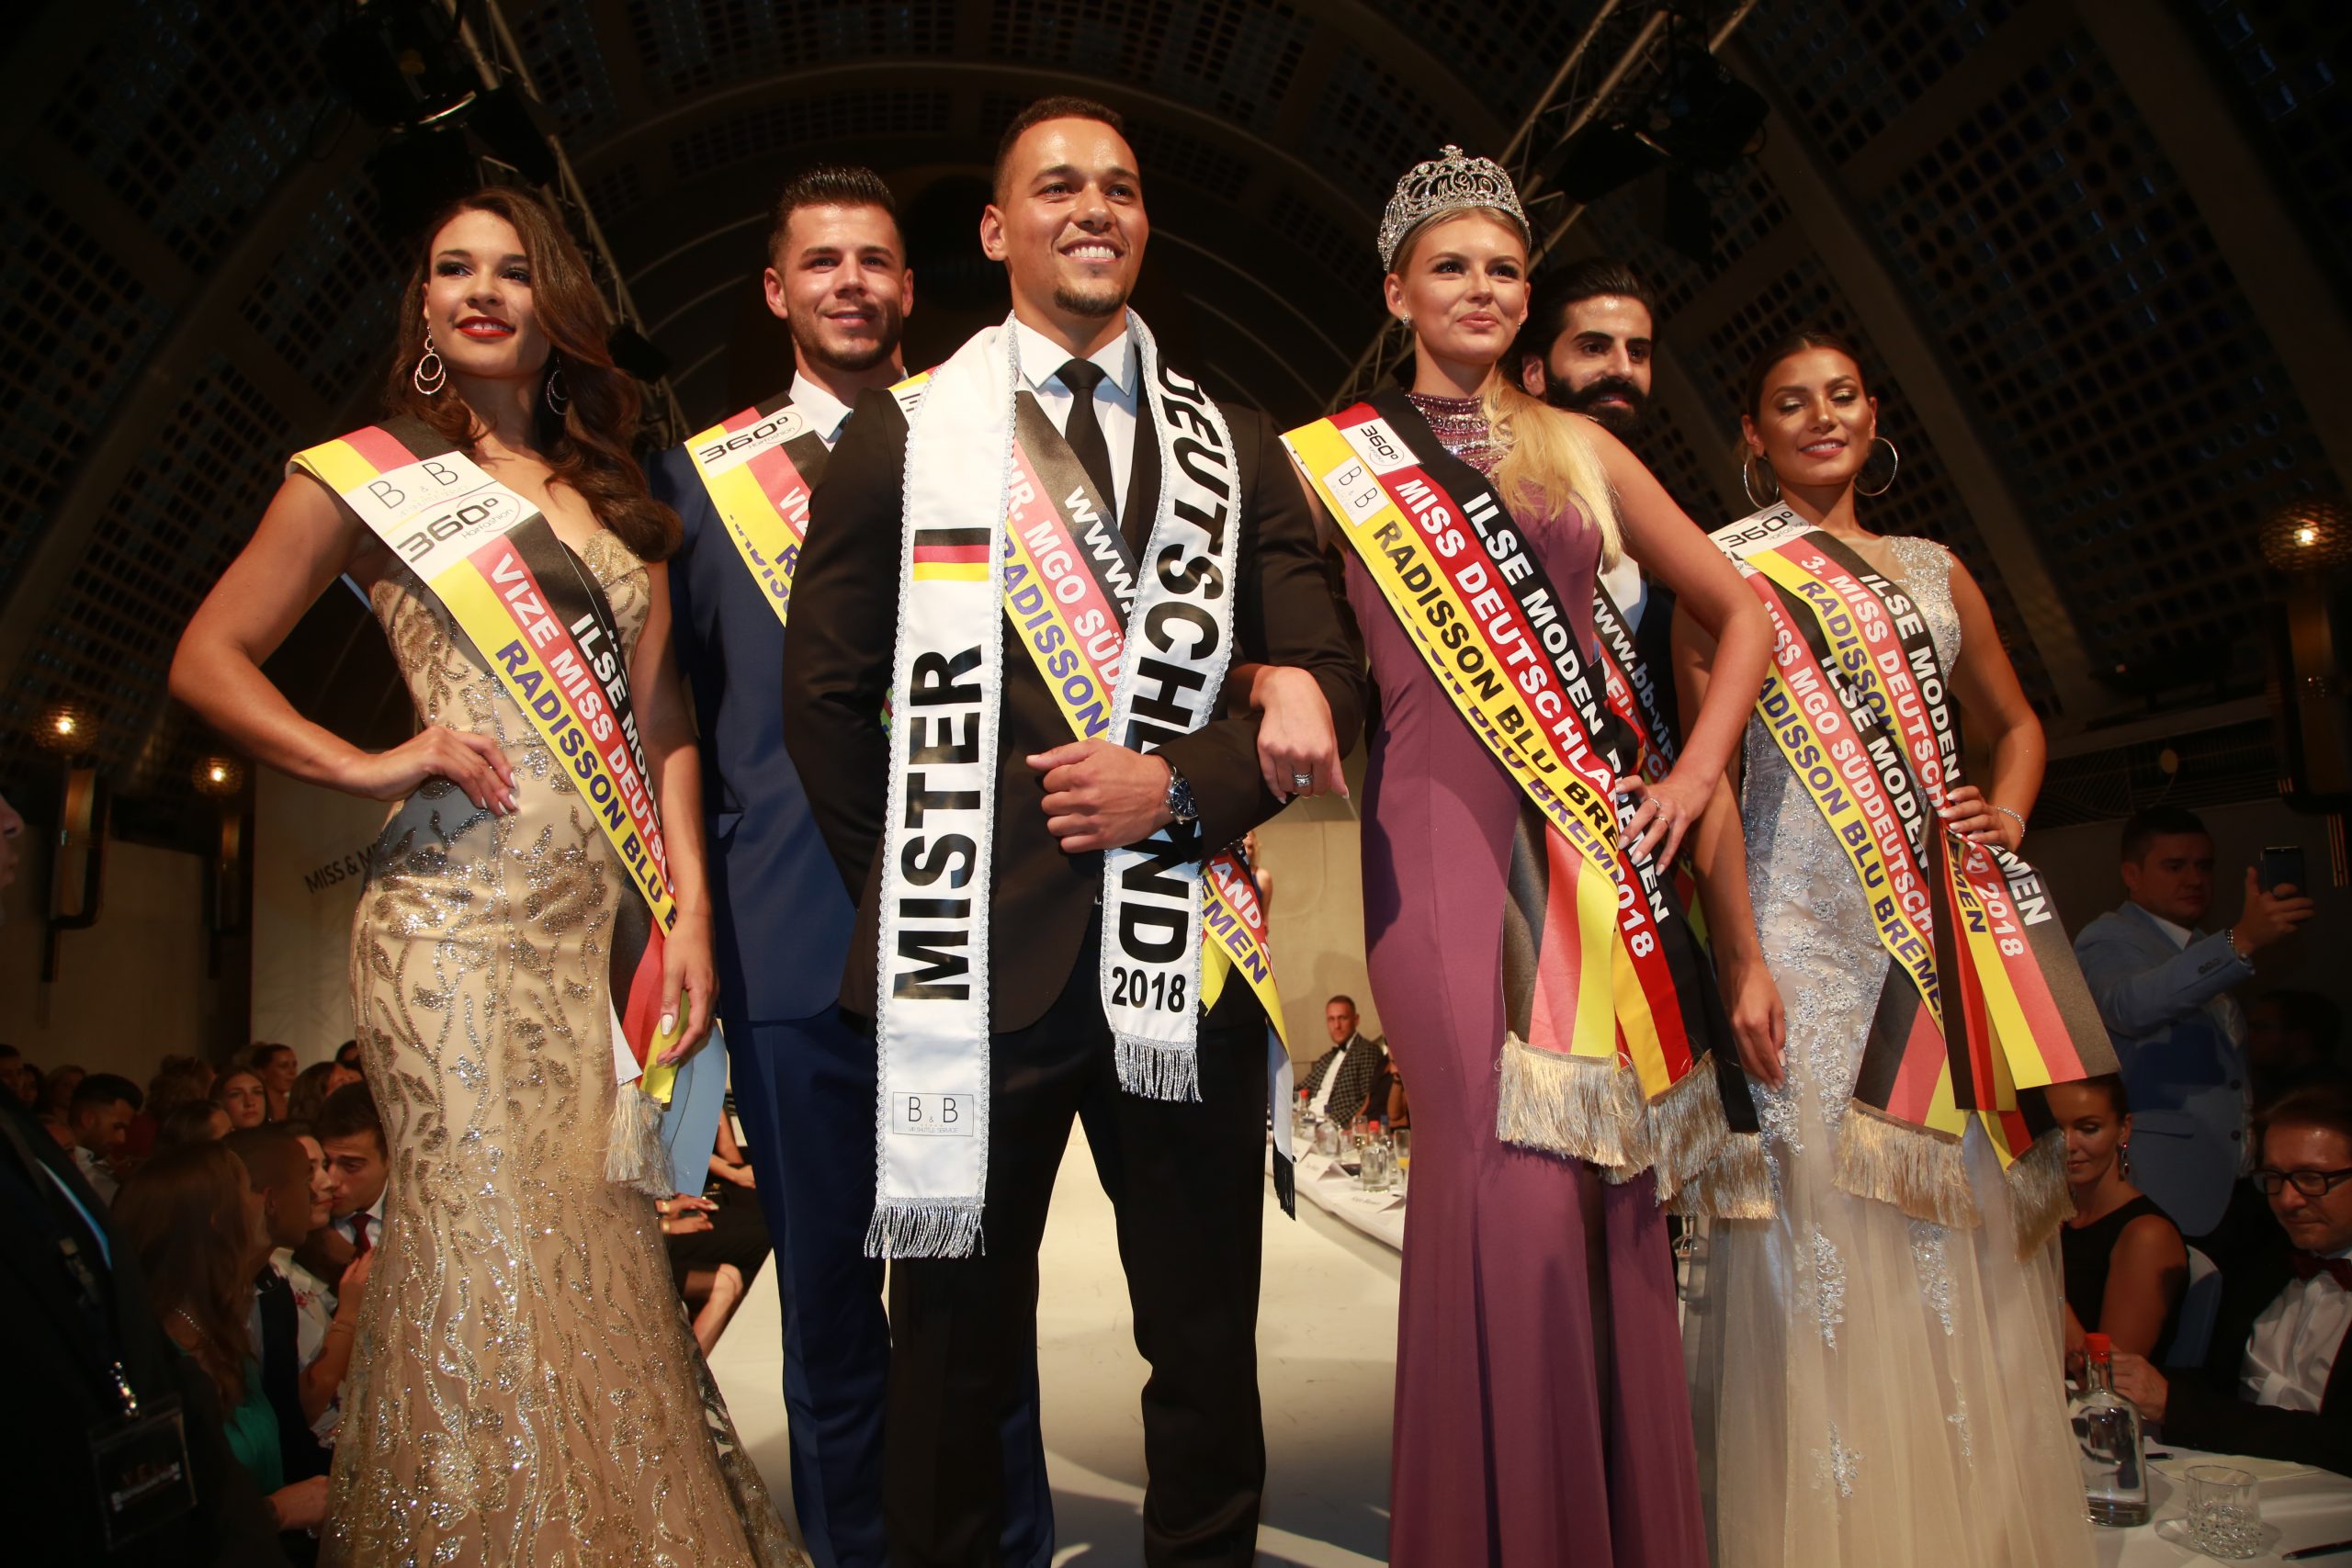 Deutschland Miss 2018 an – die Glückwunsch Sieger & Germany Organisation Mr. MGO-Miss